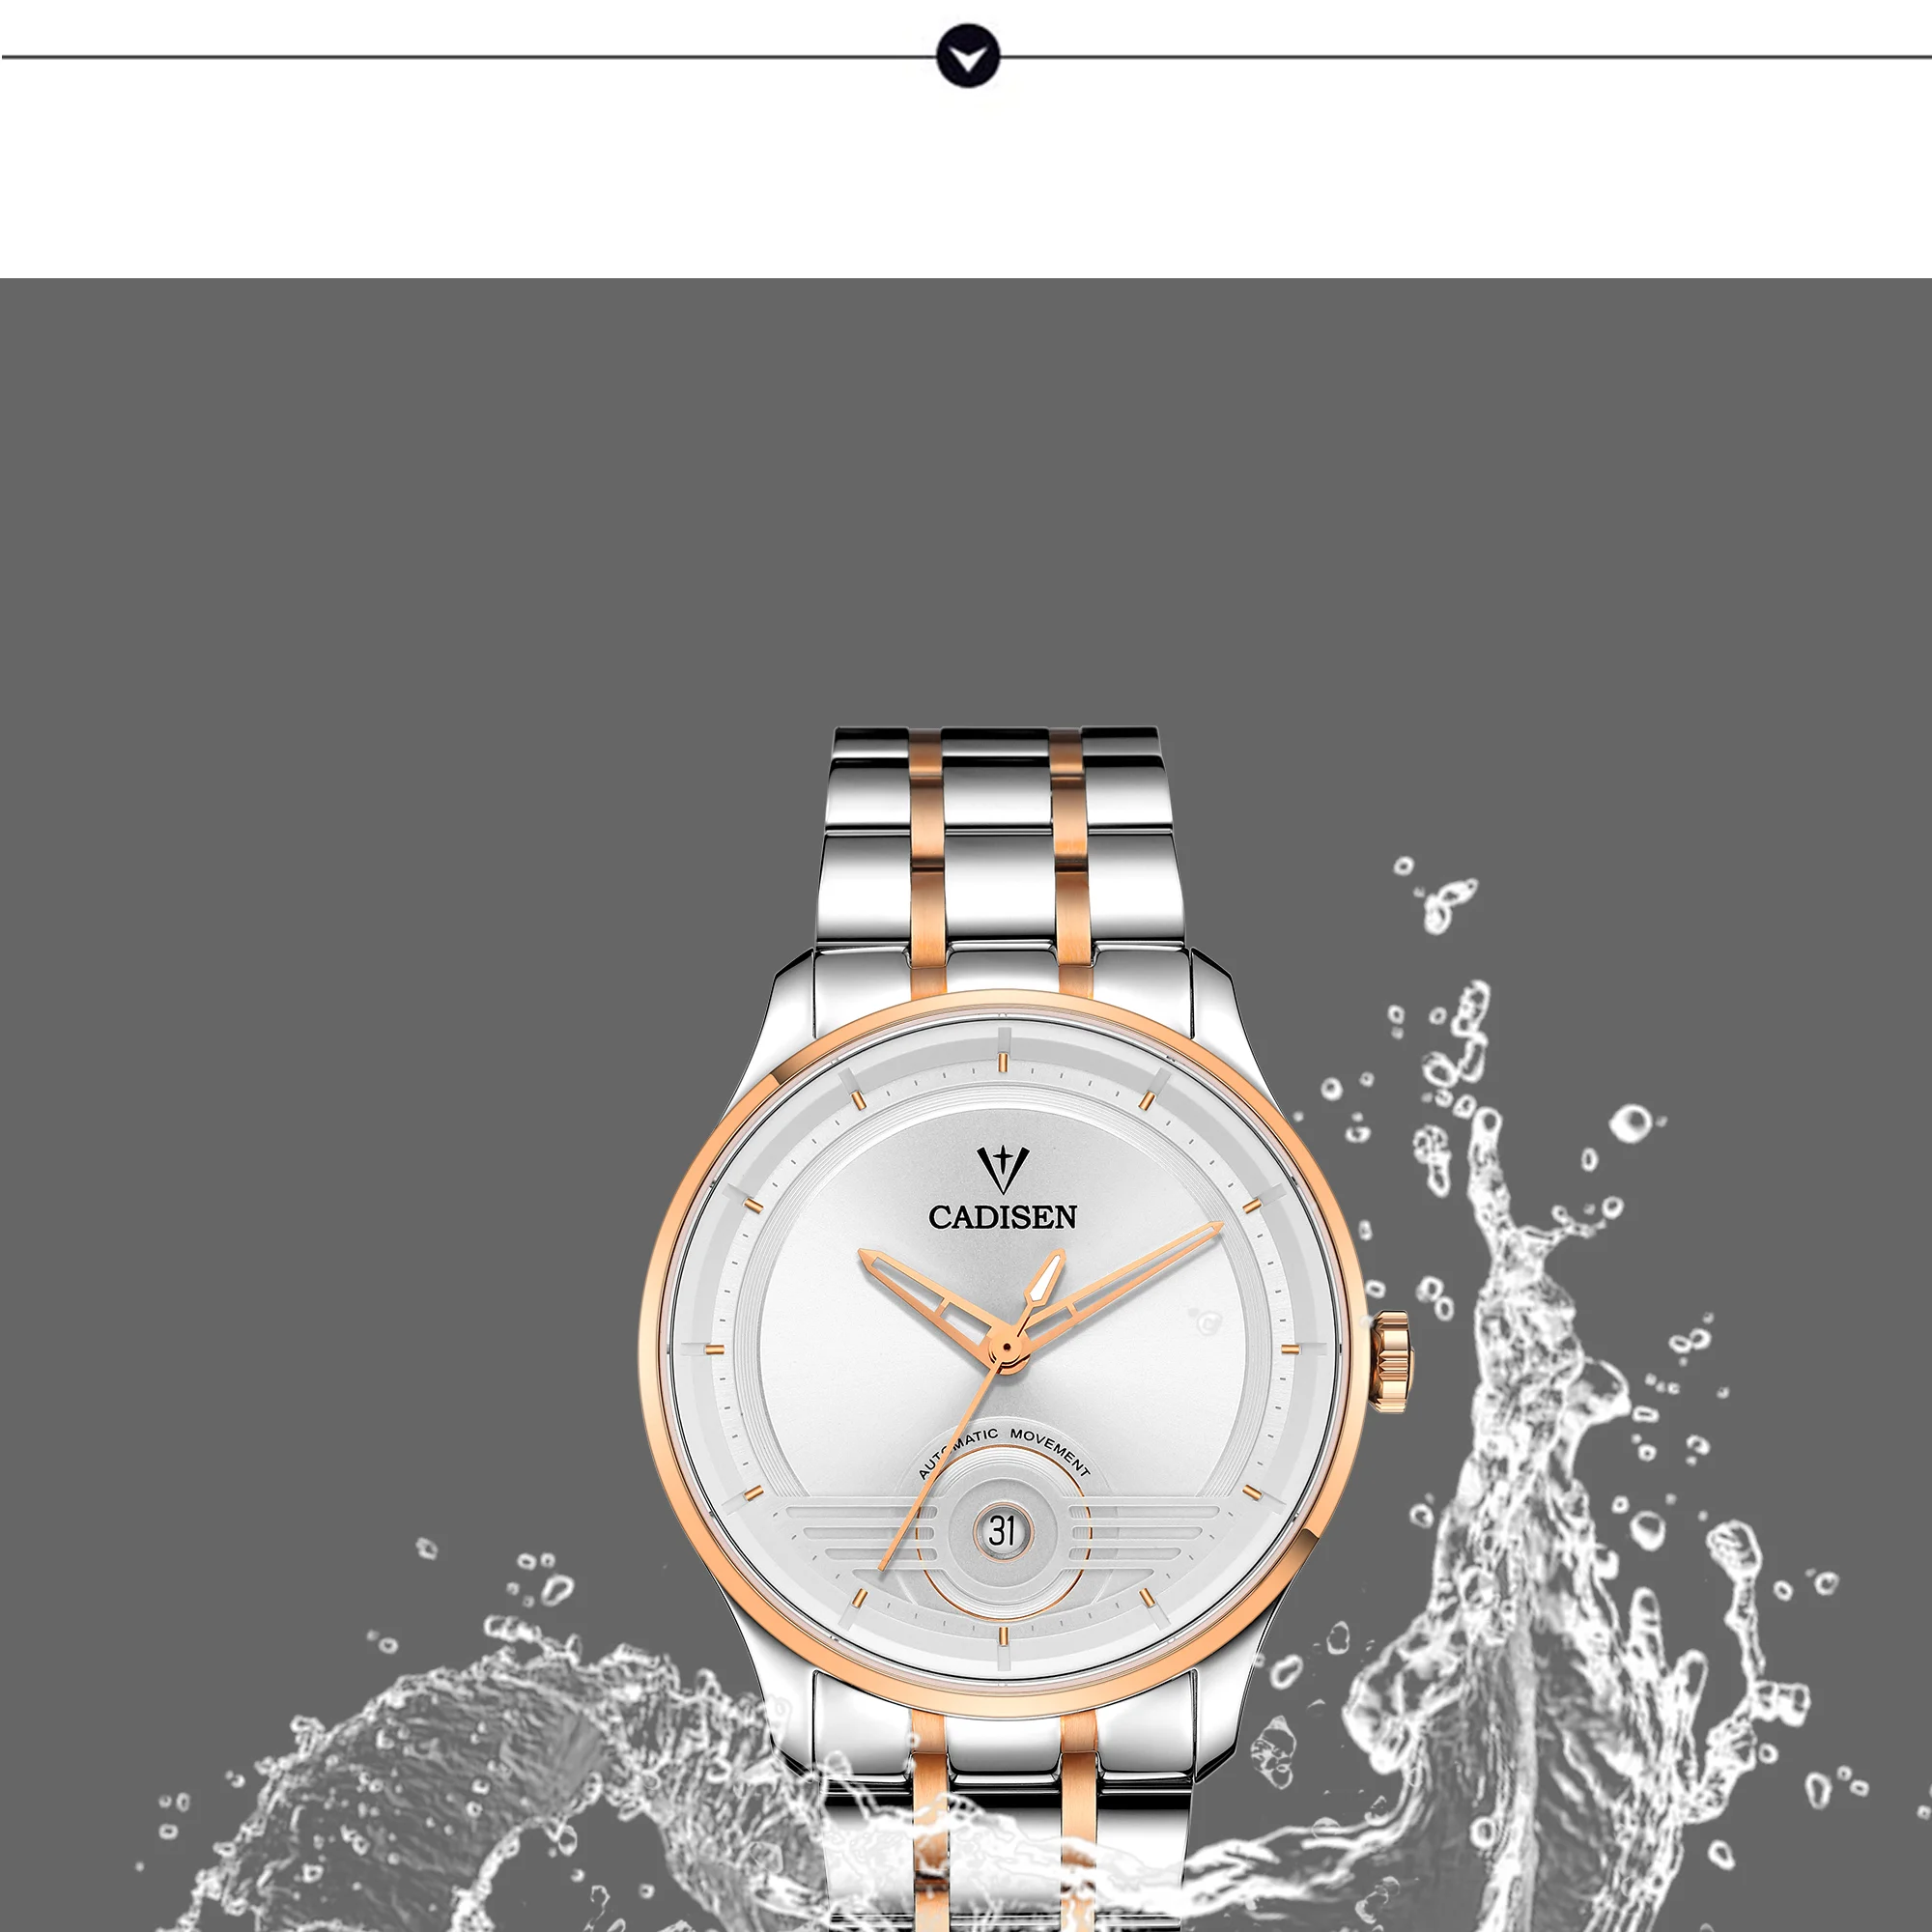 2019 новые часы мужские модные спортивные кварцевые часы мужские часы лучший бренд класса люкс Бизнес водонепроницаемые хронограф Relogio Masculino